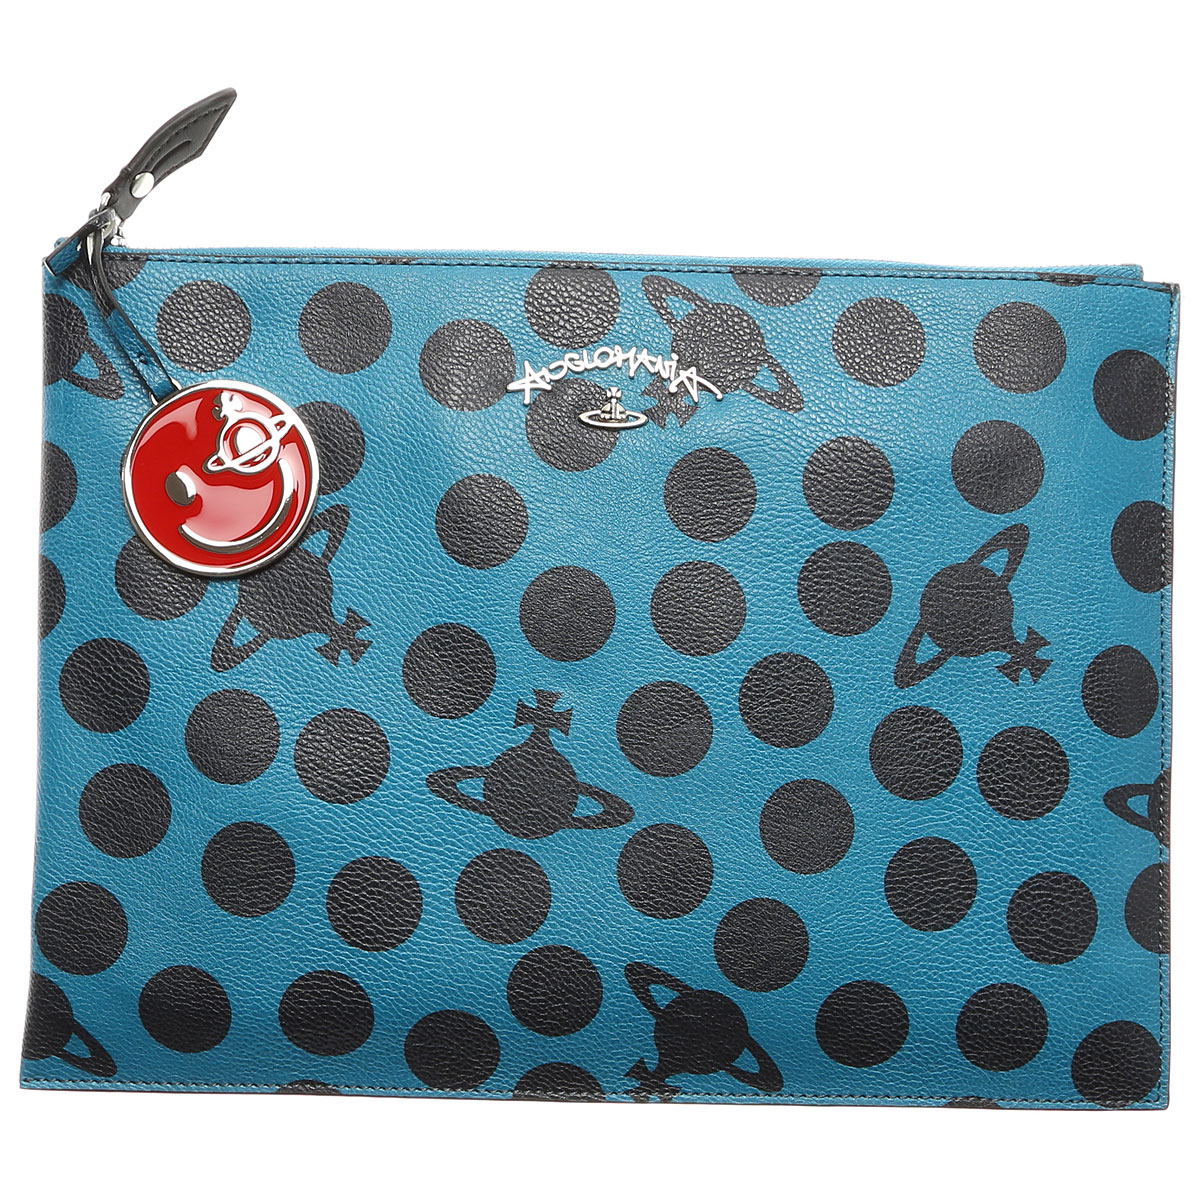 Handbags Vivienne Westwood, Style code: 13957-blu-B374